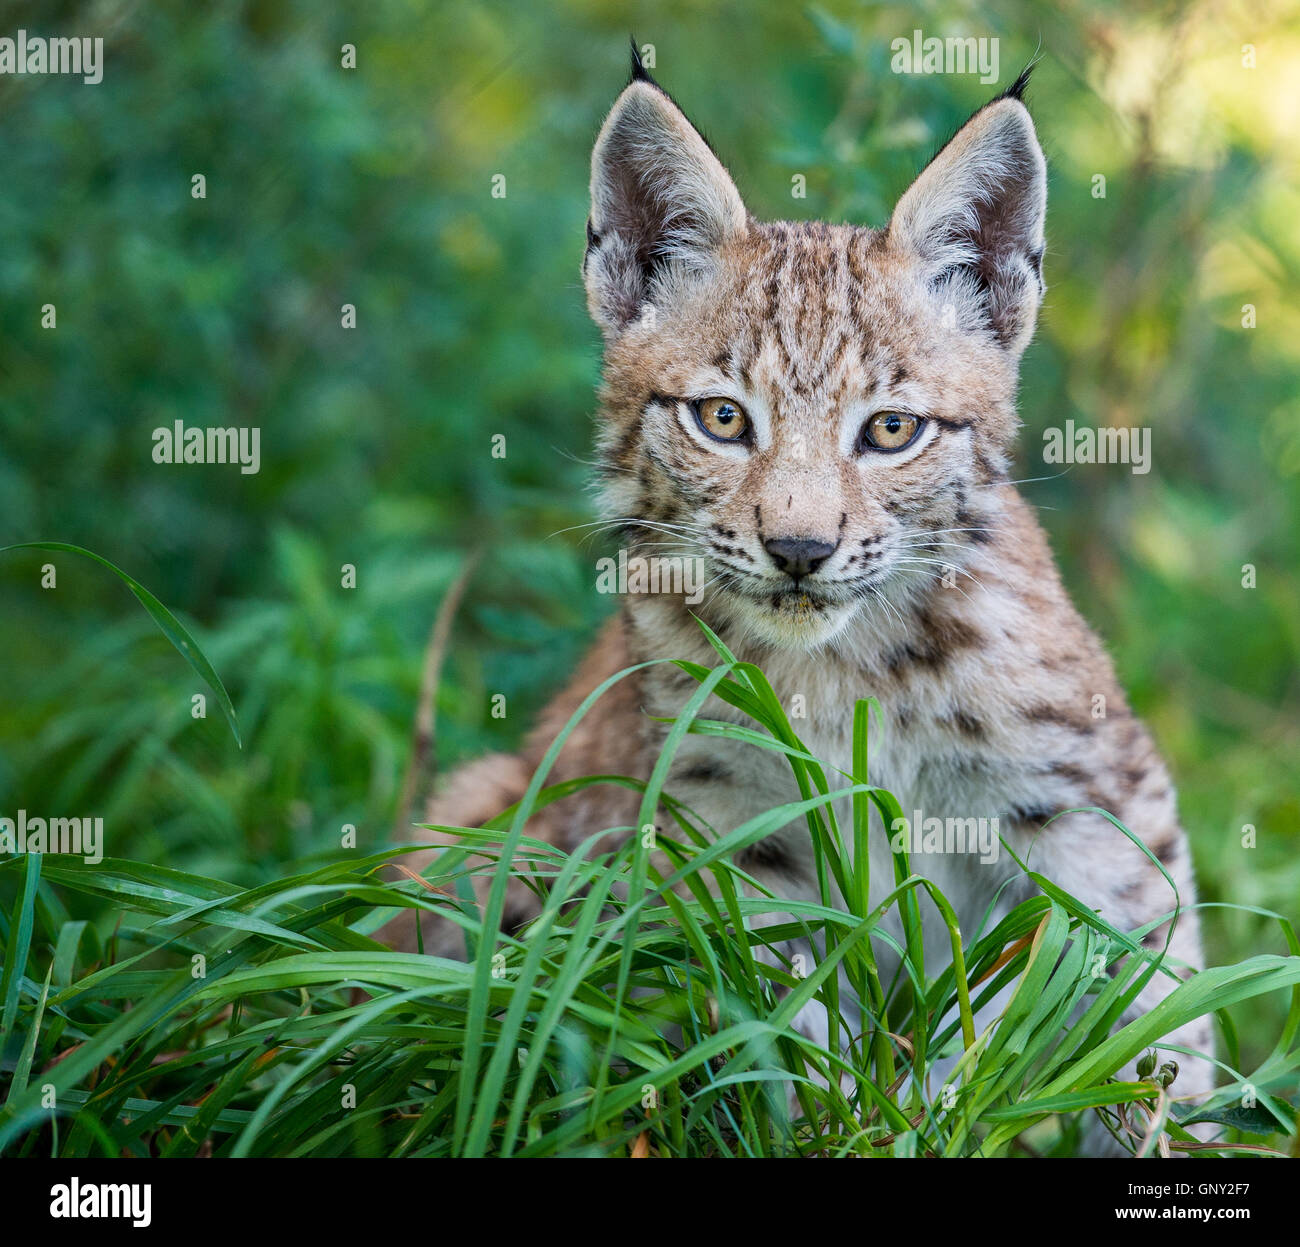 Schoenebeck brut, de l'Allemagne. Du 1er septembre 2016. Un jeune lynx (Lynx lynx) dans un enclos au parc Schorfheide brut en Allemagne, Schoenebeck, 1 septembre 2016. Deux jeunes lynx sont nés à peu près il y a deux mois et demi. Le parc nord de Berlin est habitée par des animaux et certains qui sont probablement éteintes dans la nature. PHOTO : PATRICK PLEUL/dpa/Alamy Live News Banque D'Images